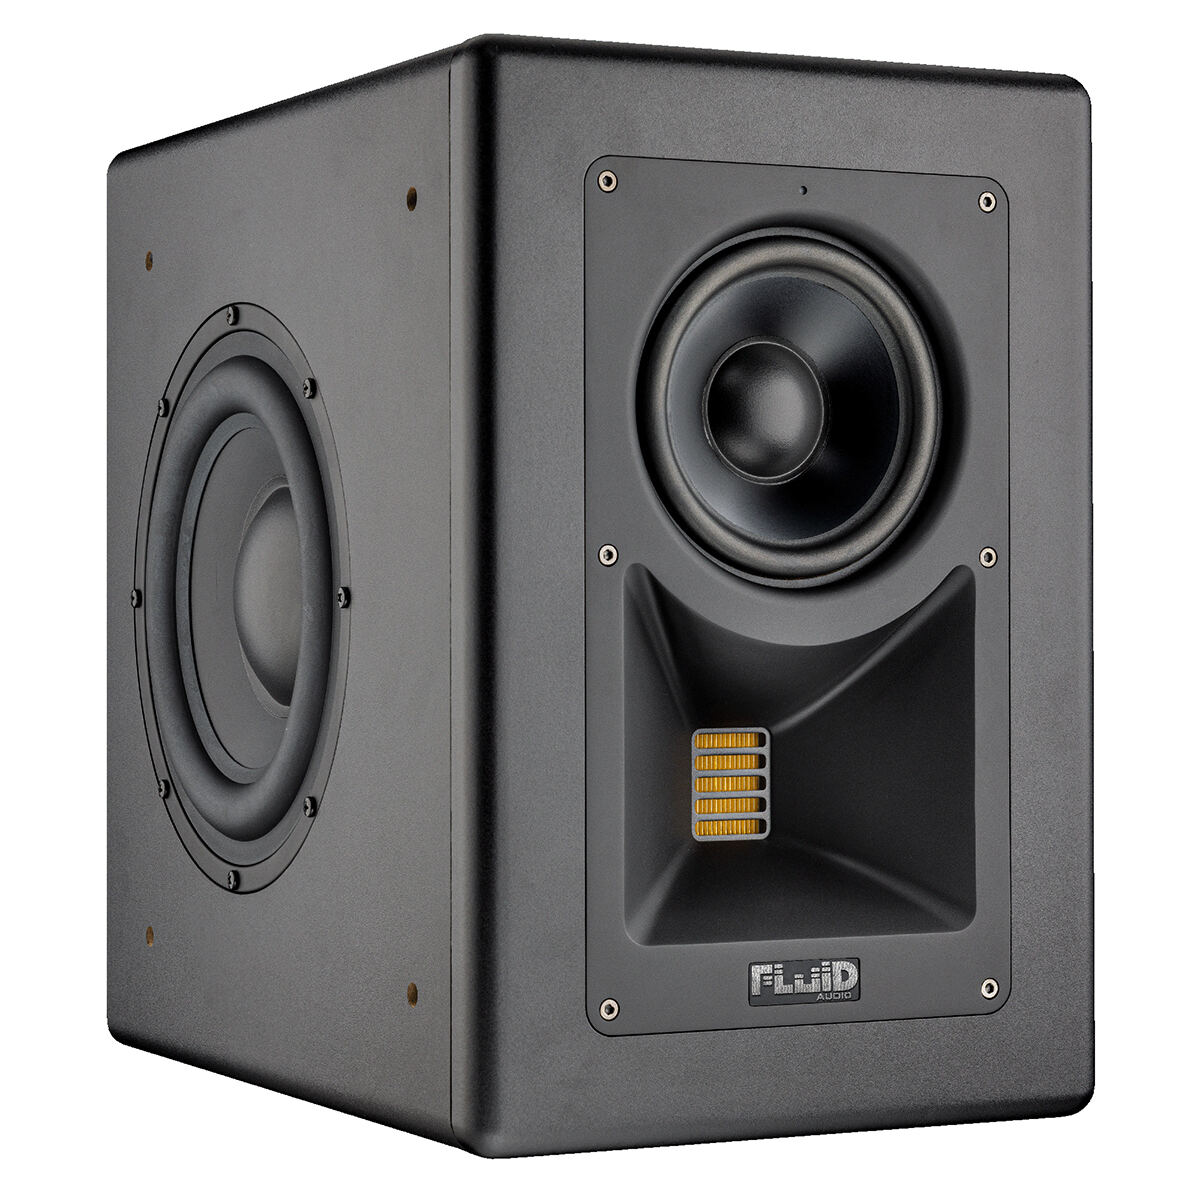 ローランド、米Fluid Audioのモニタースピーカー「Image2」を発売